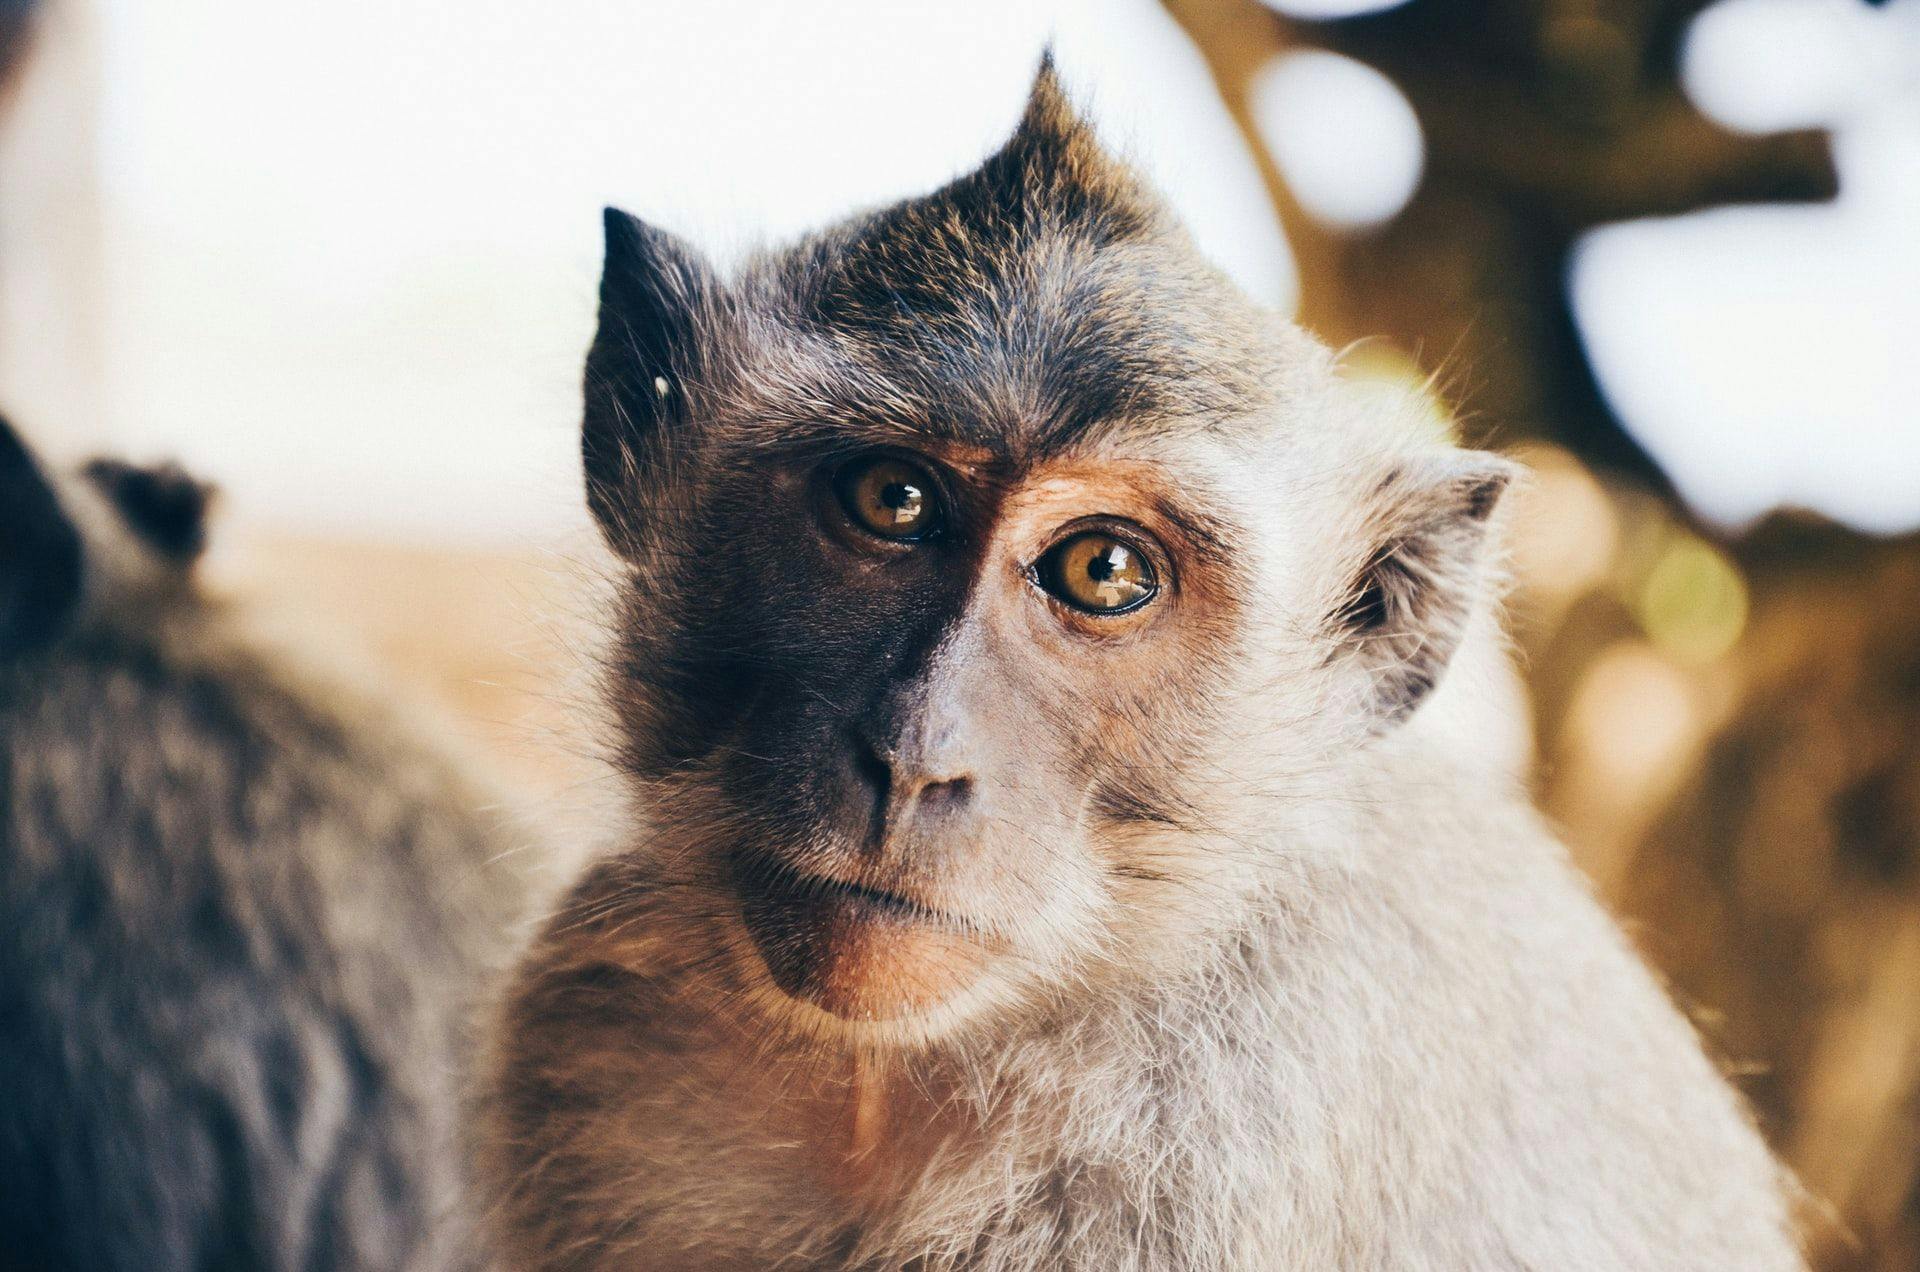 Оспа обезьян — глобальная угроза здоровью, объявила ВОЗ